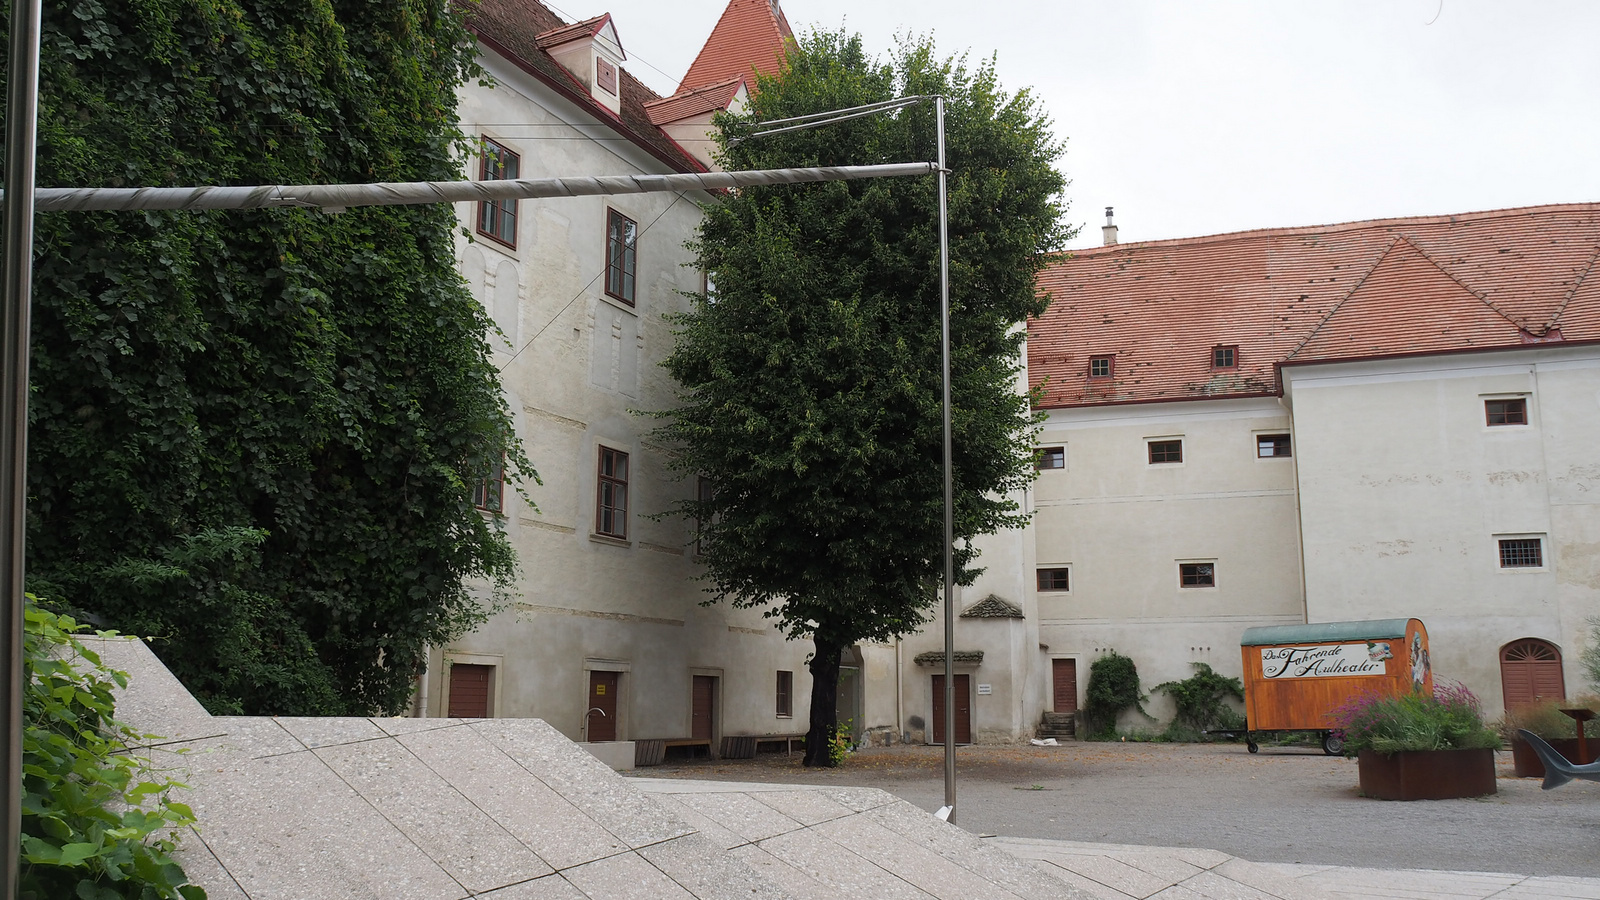 Ausztria, Schloss Orth, SzG3